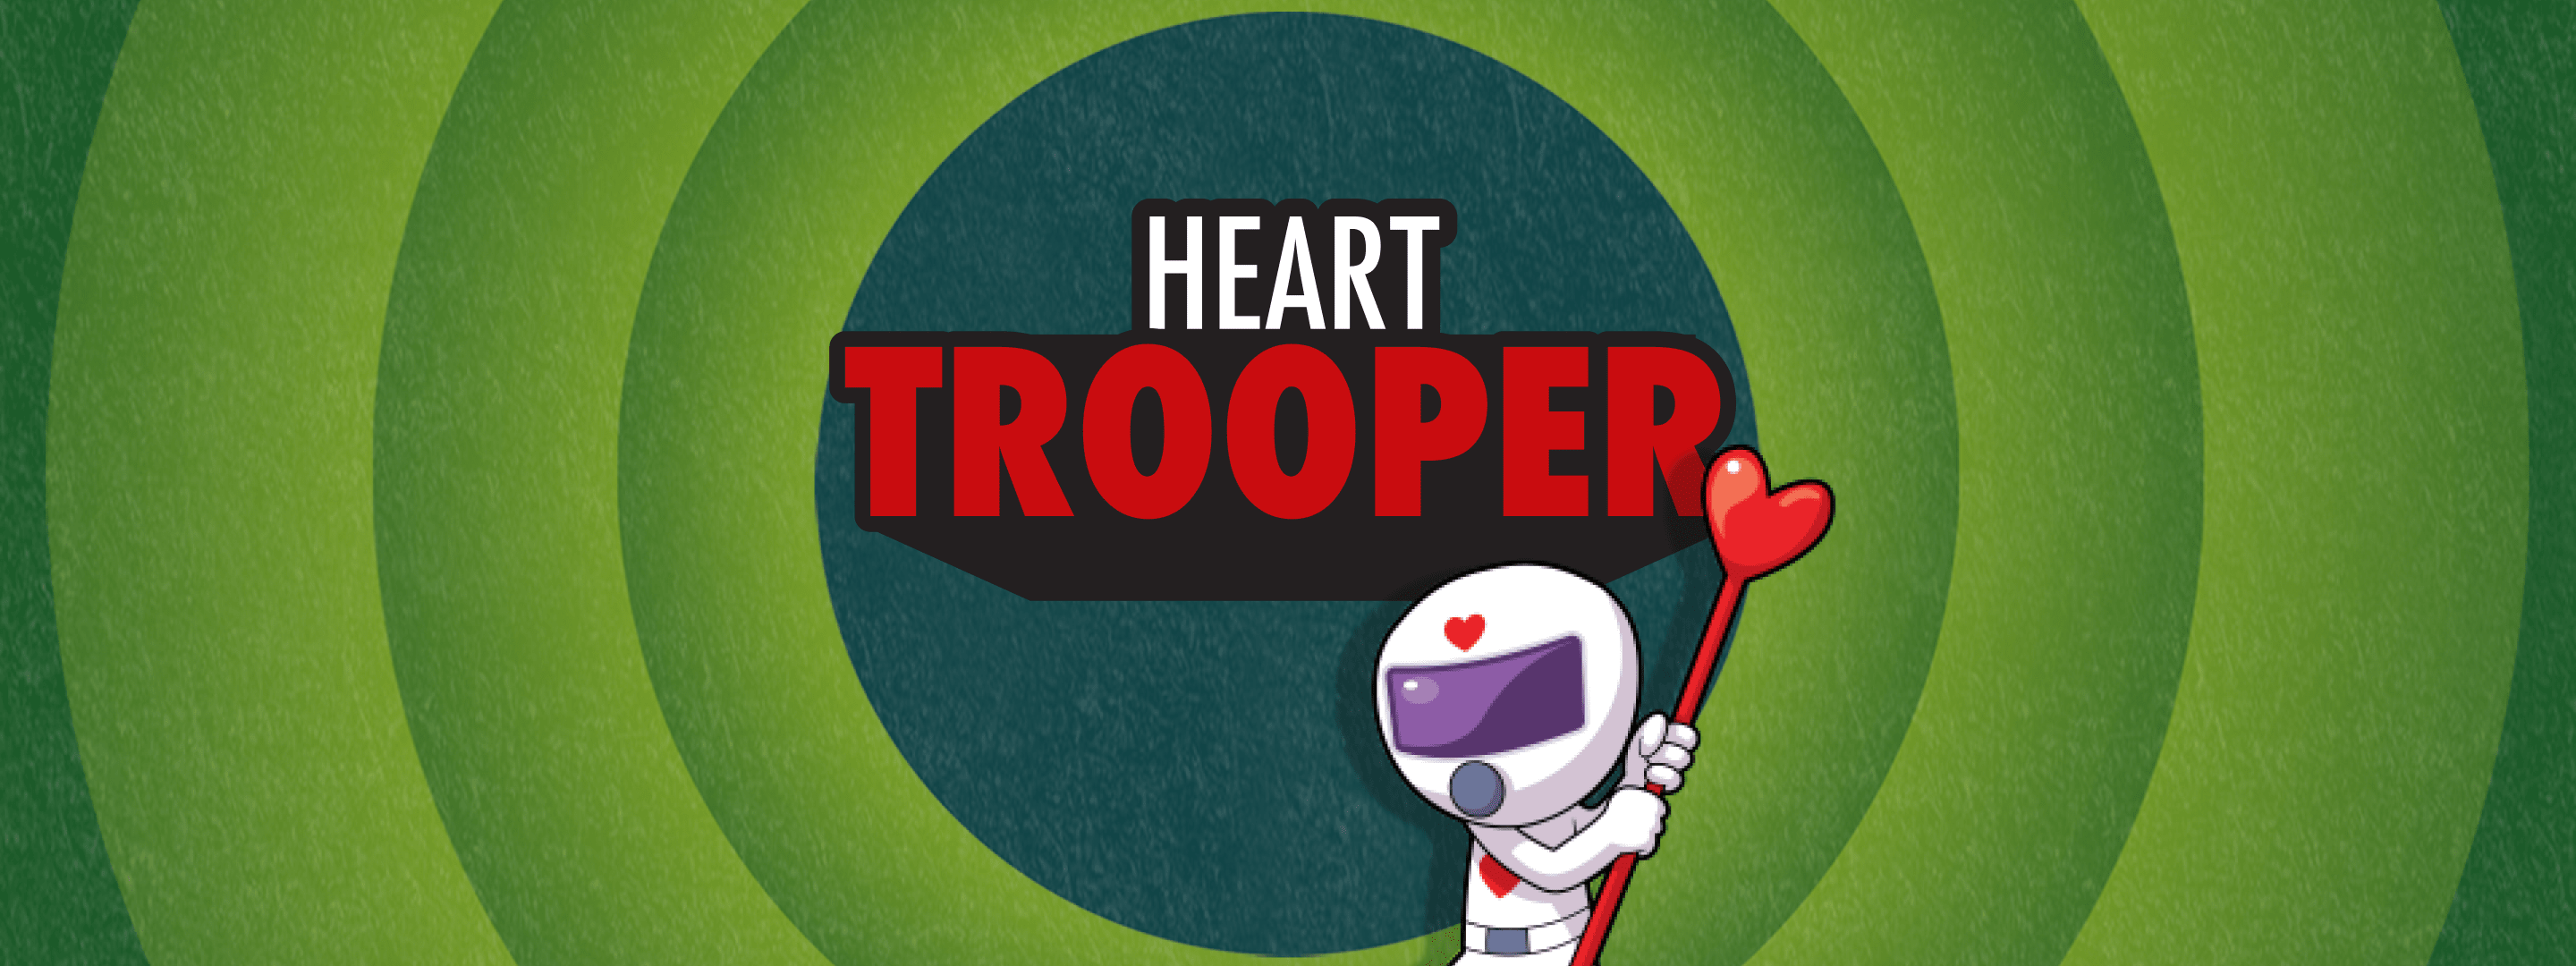 Heart Trooper 